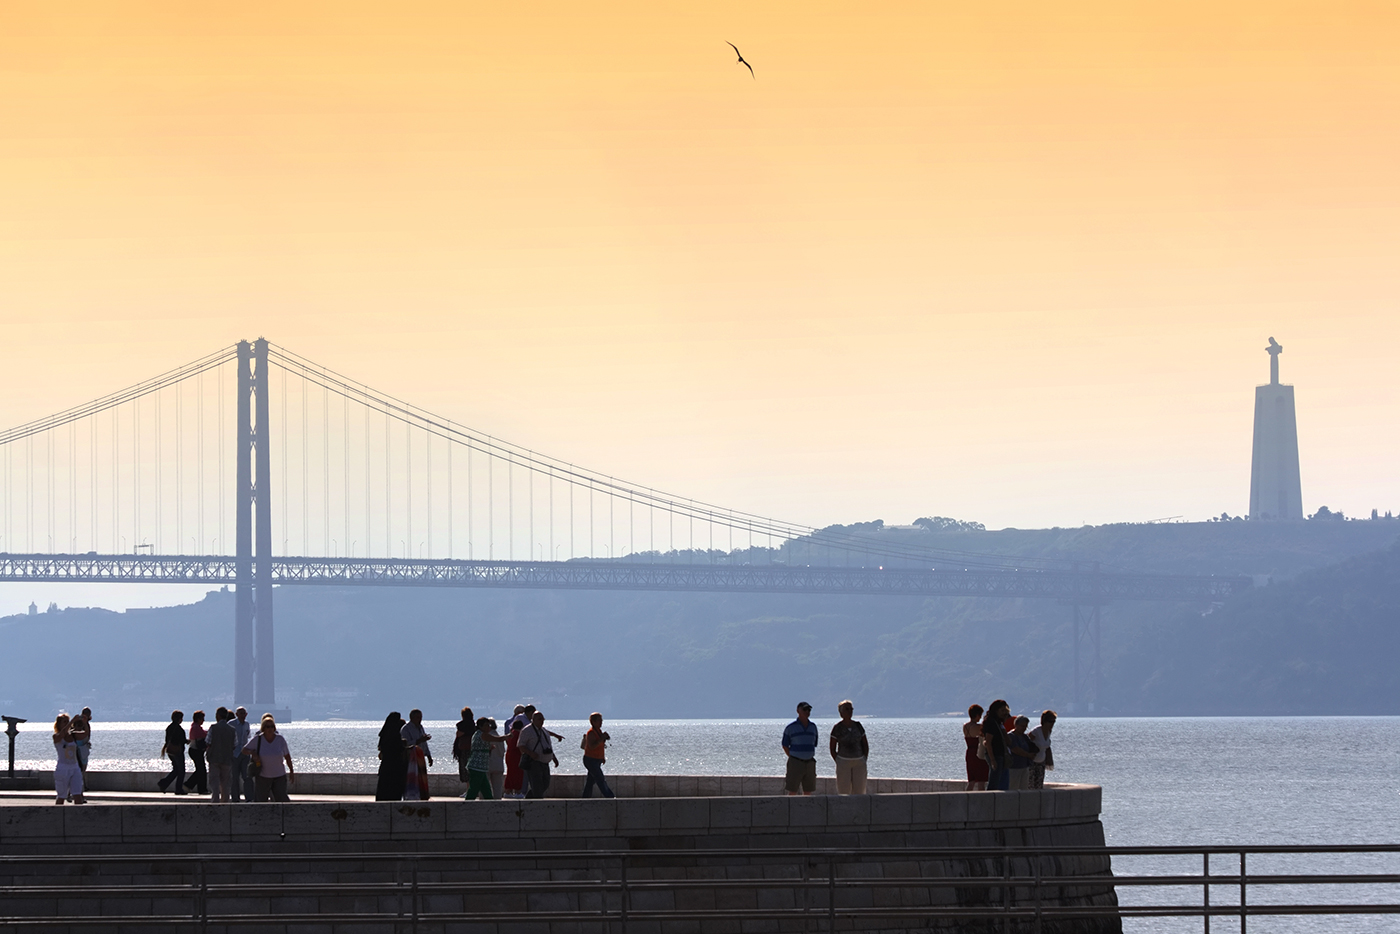 Lisboa - 25 April Bridge | © Turismo de Lisboa |